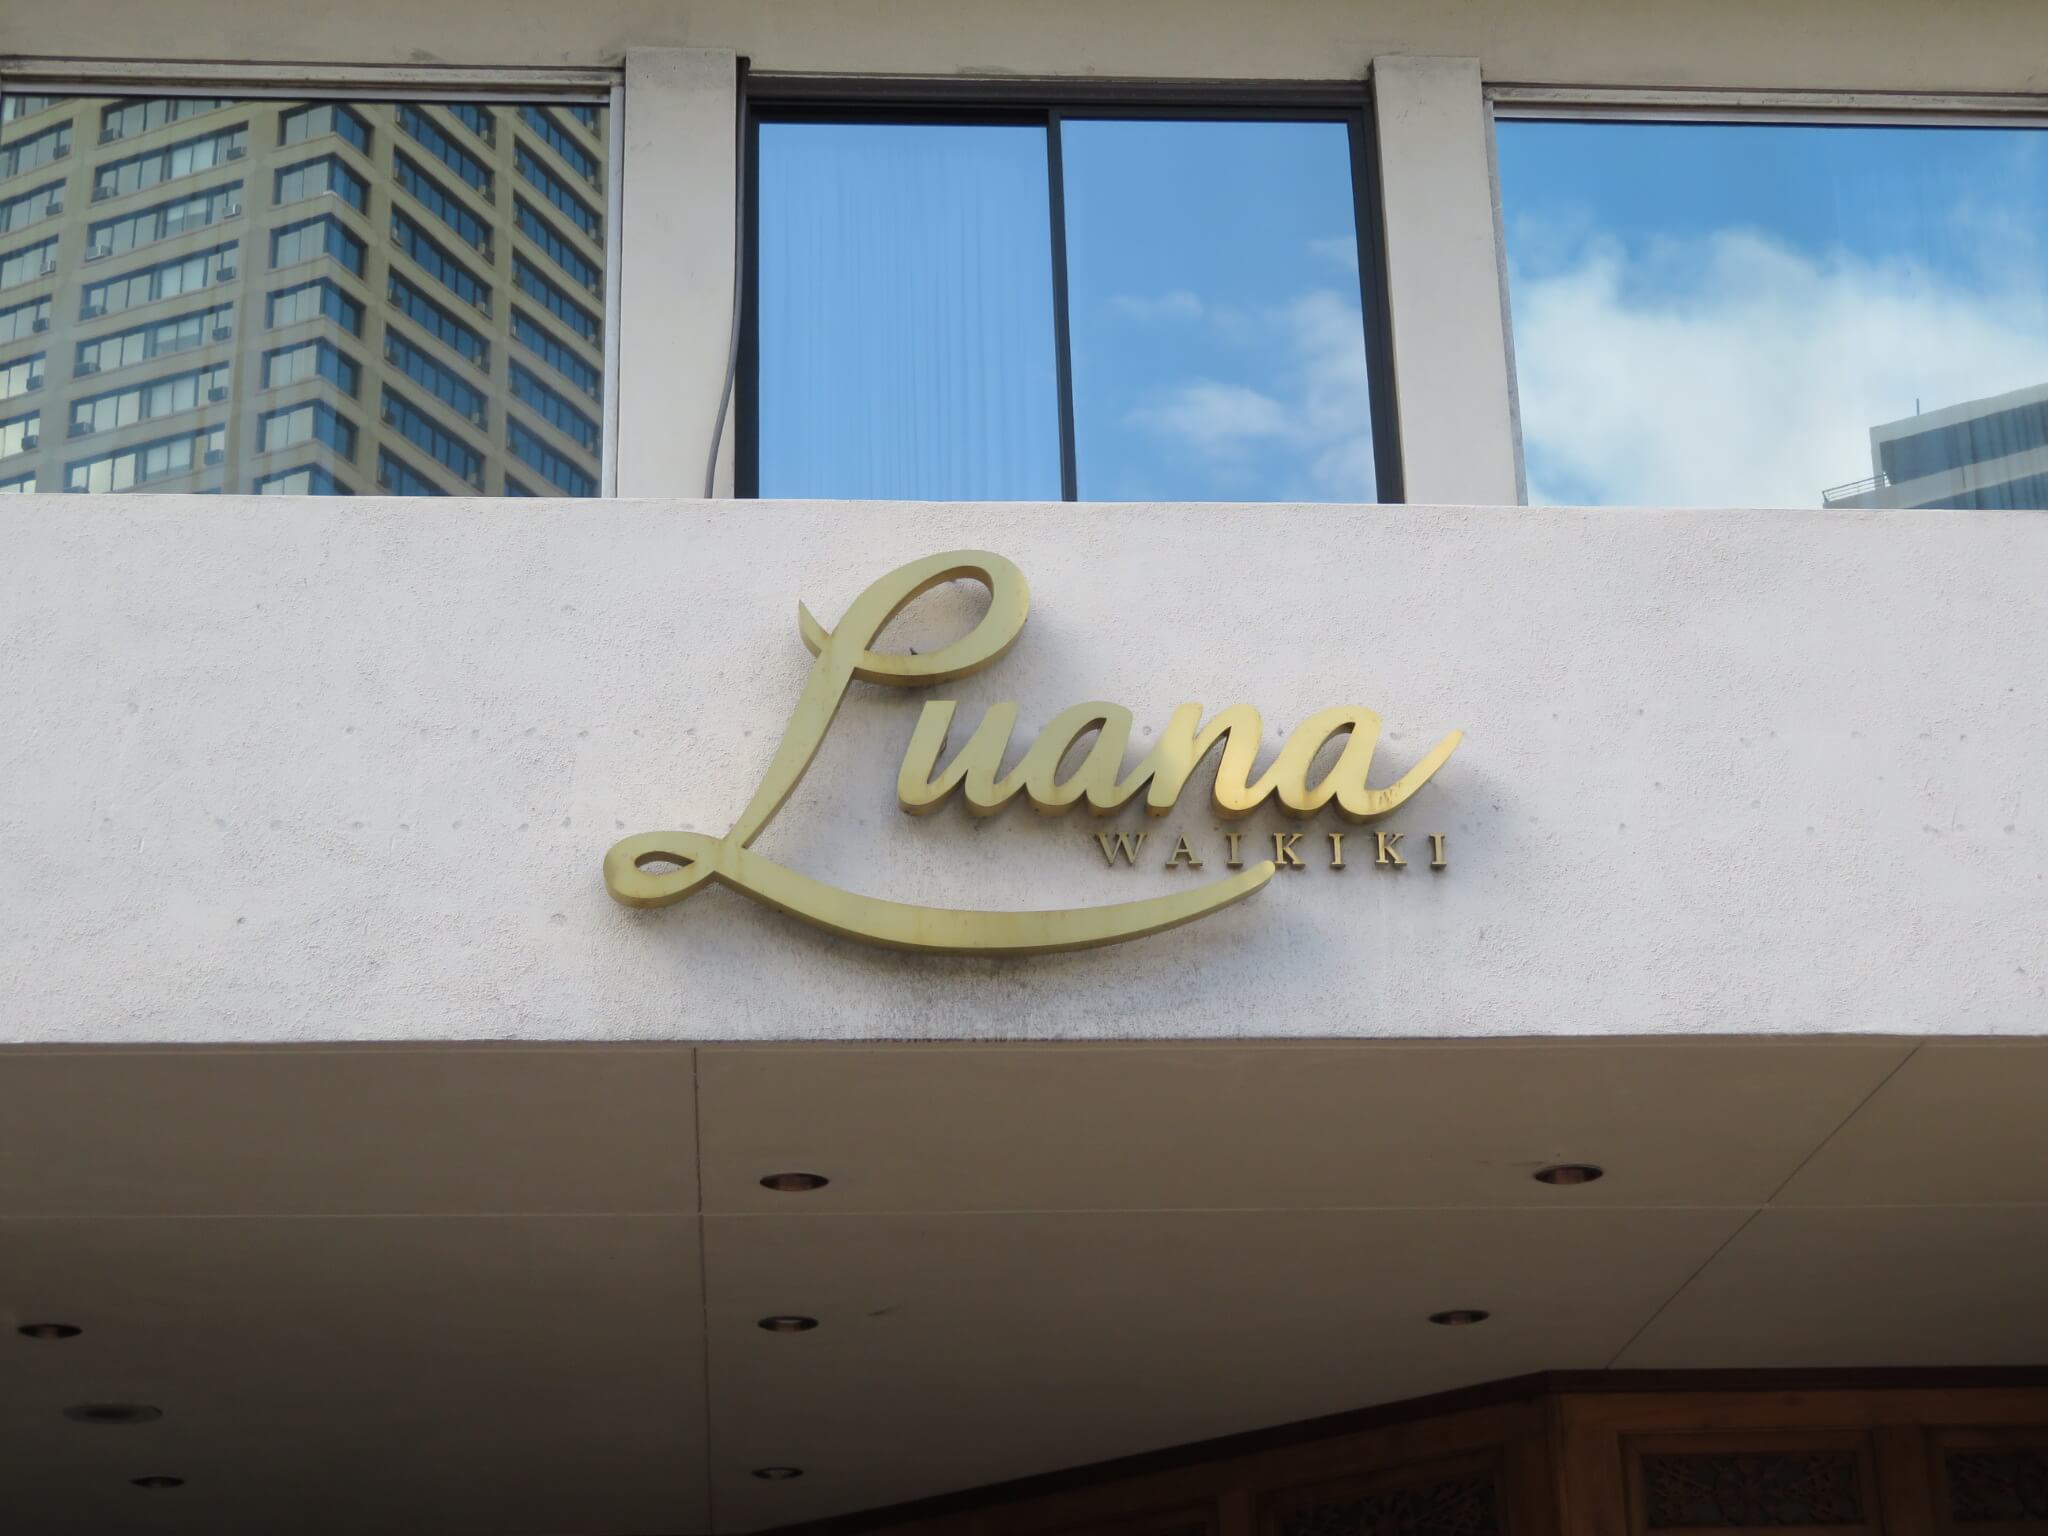 ルアナ・ワイキキ / Luana Waikiki